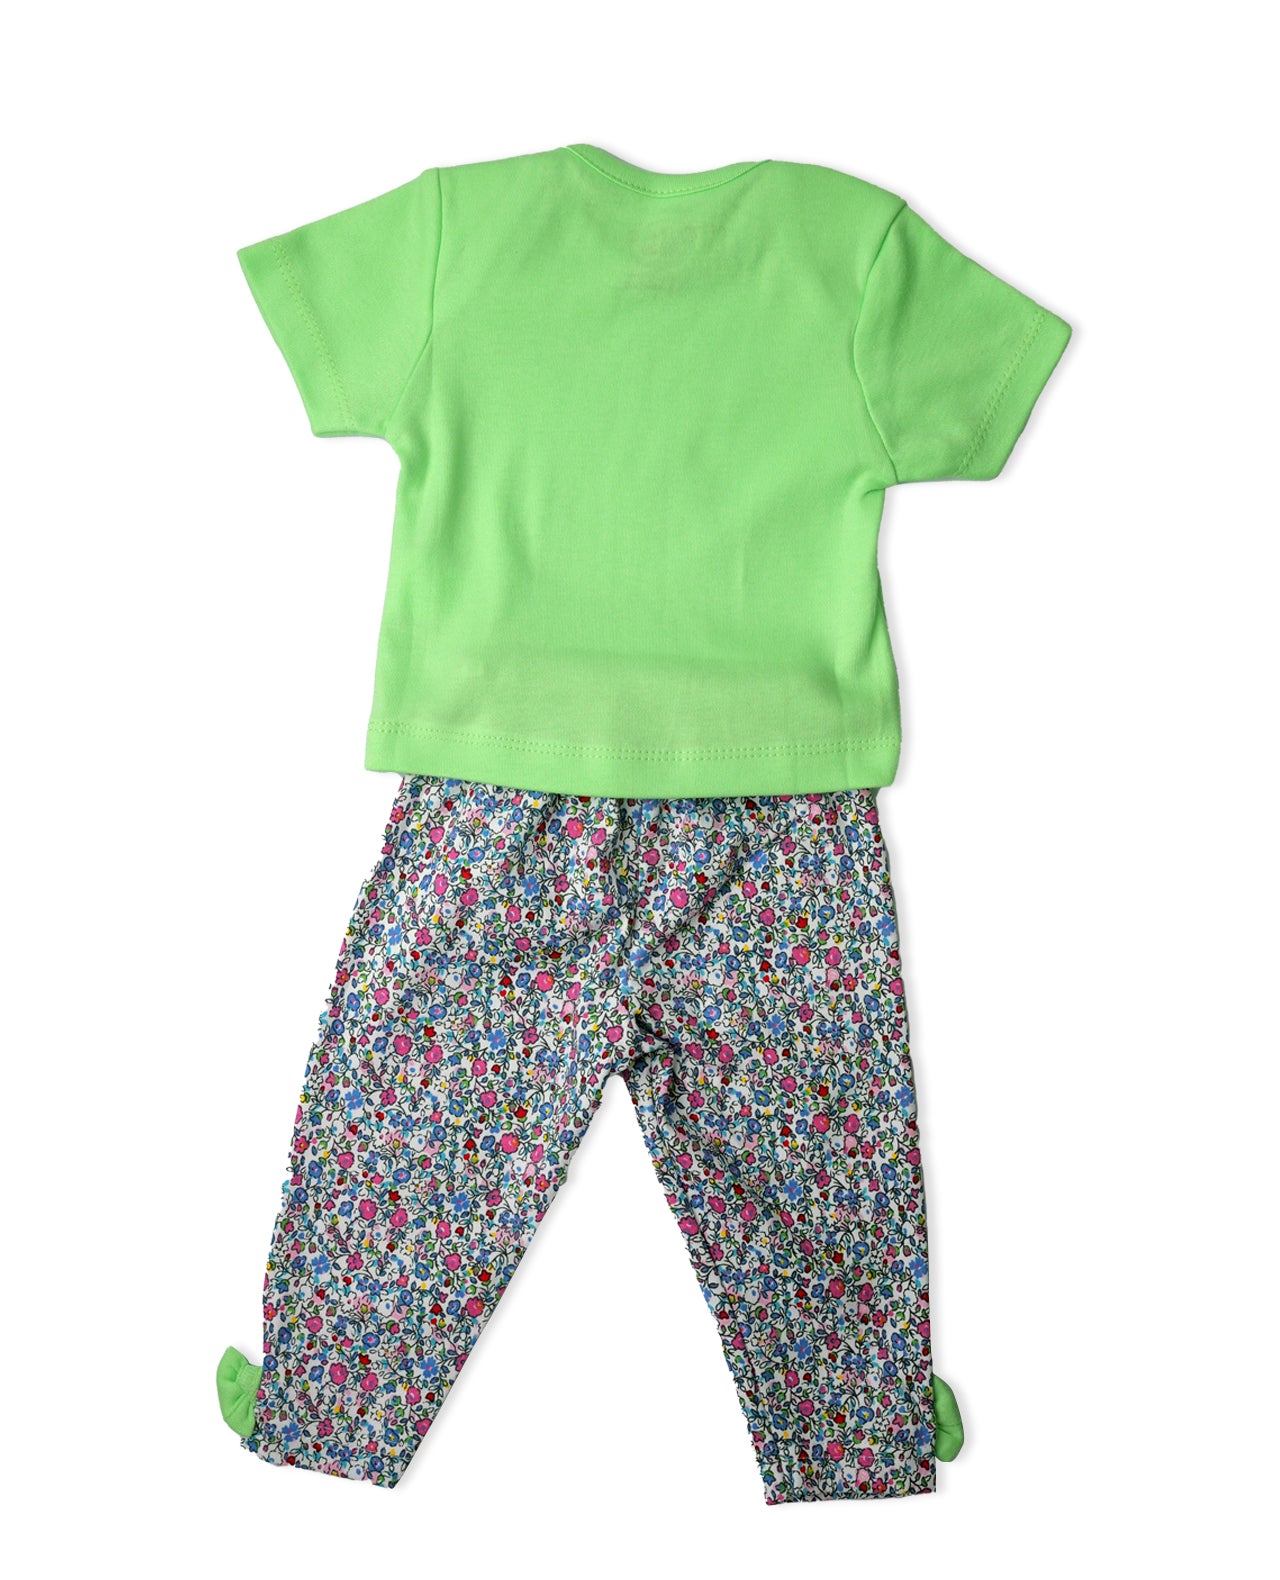 
                  
                    Cotton Baby Girls Printed Long Pant Pyjamas Set
                  
                